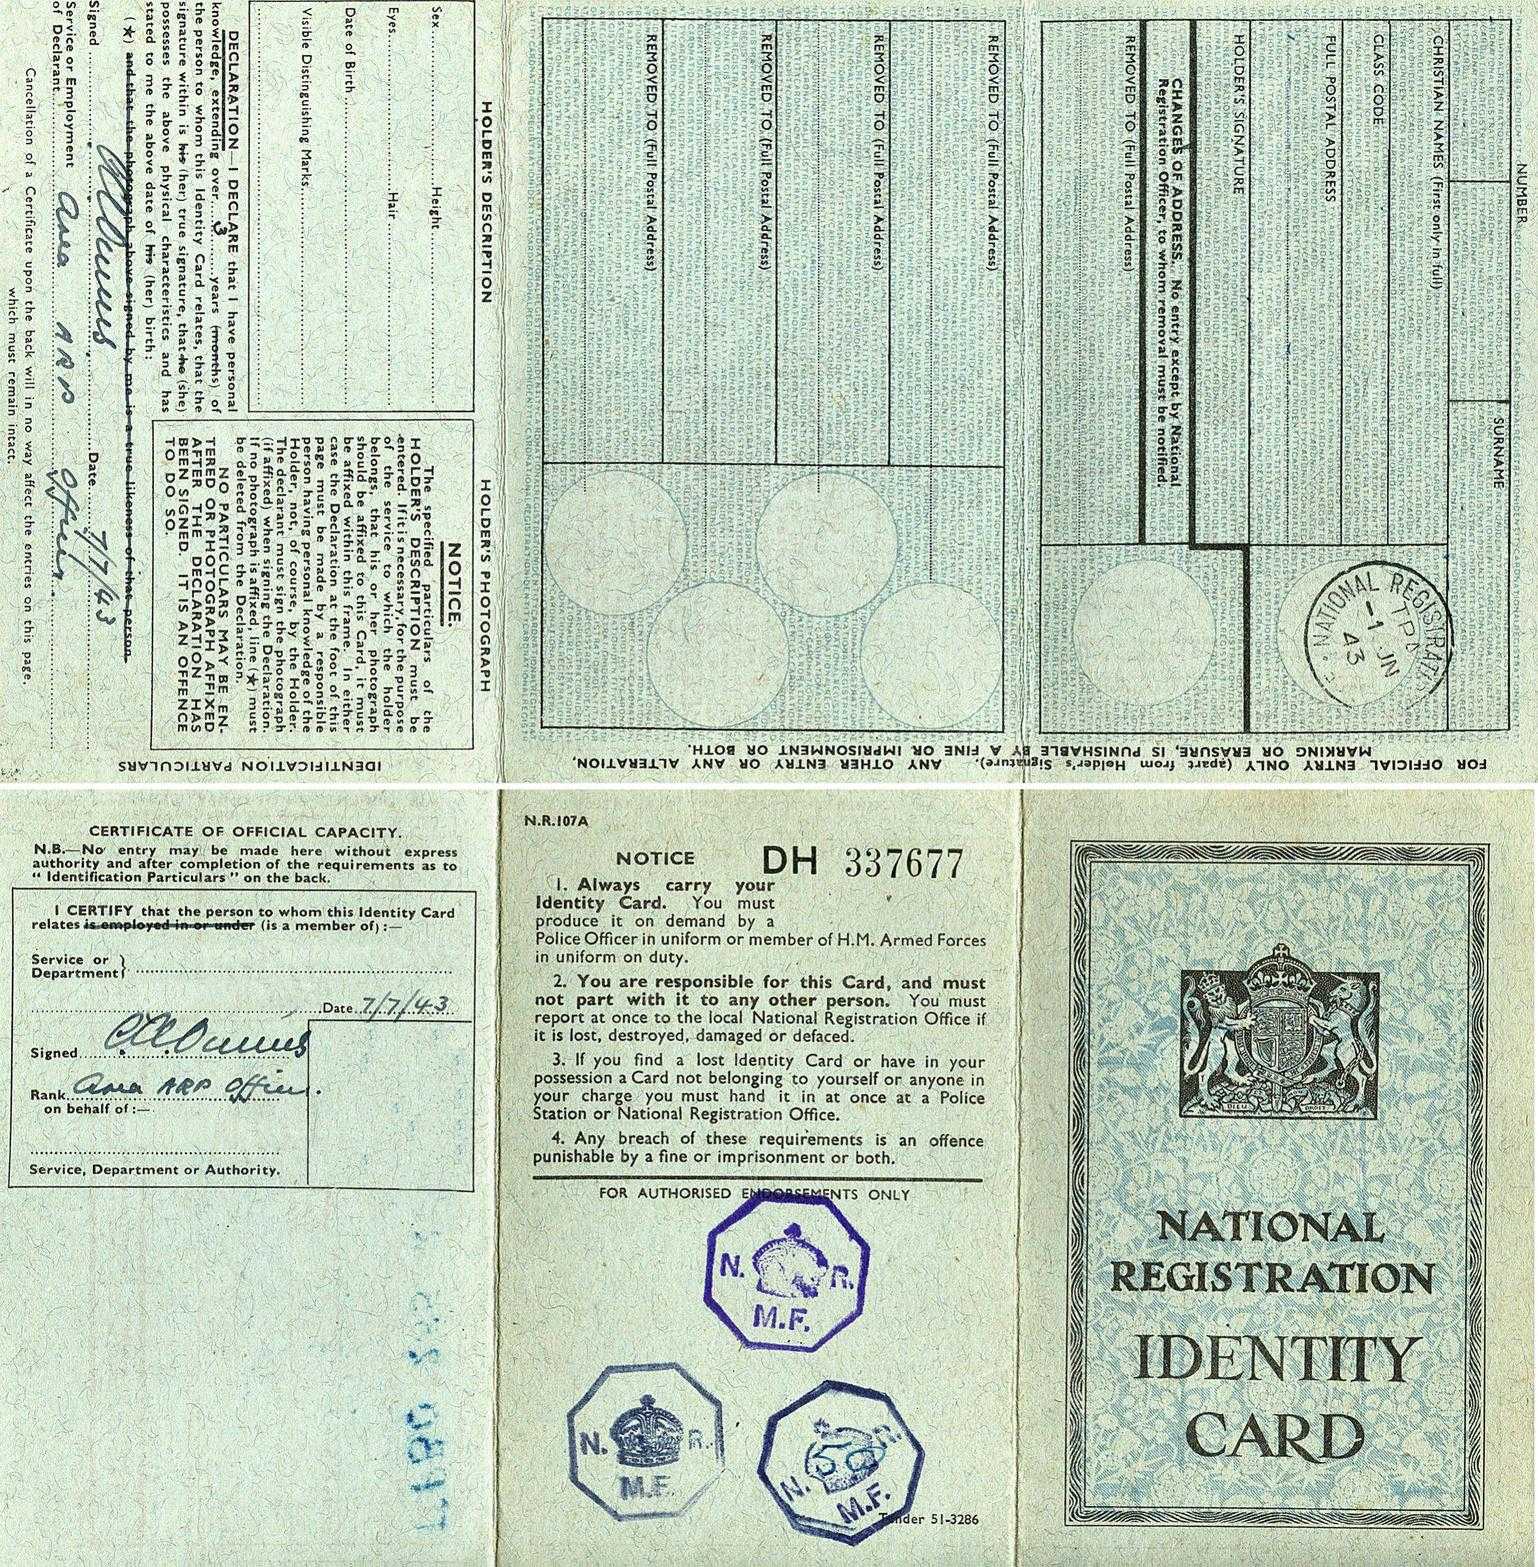 World War 2 Identity Card Template | Akhbarqatar With World War 2 Identity Card Template